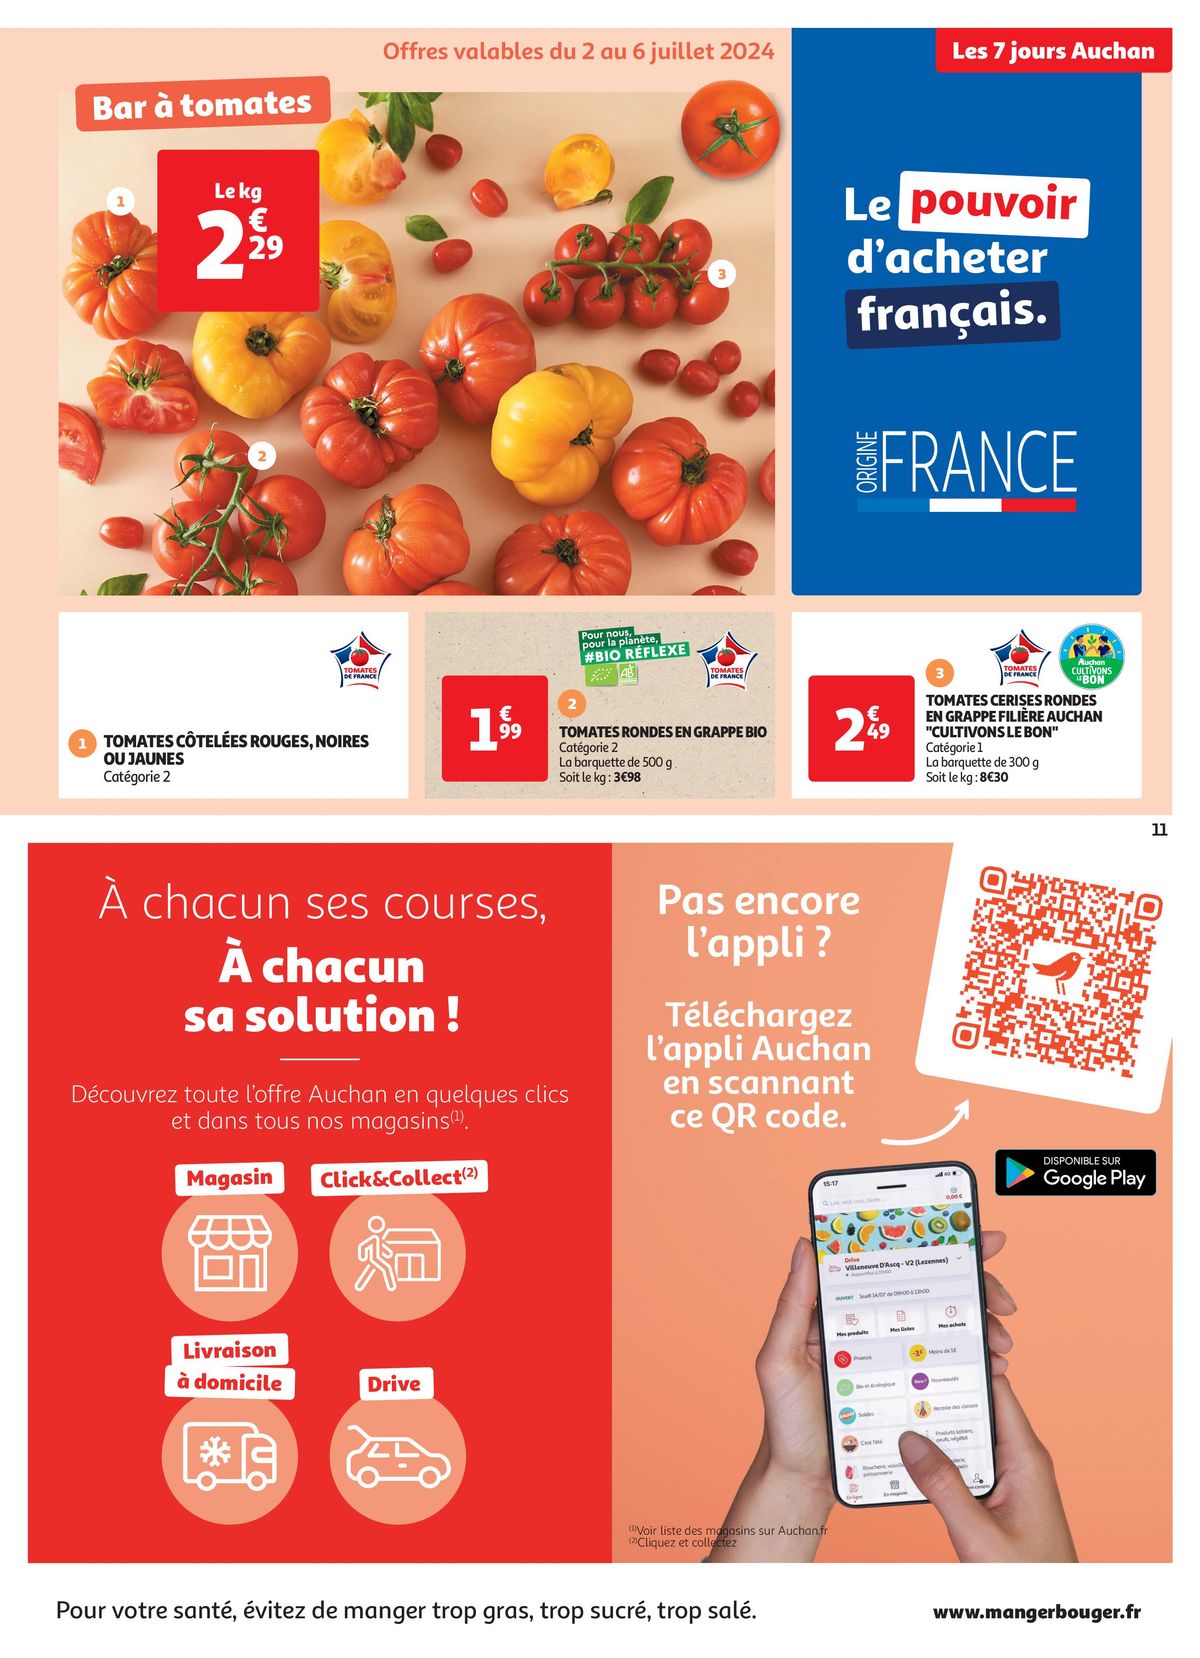 Catalogue C'est les 7 jours Auchan dans votre super !, page 00011